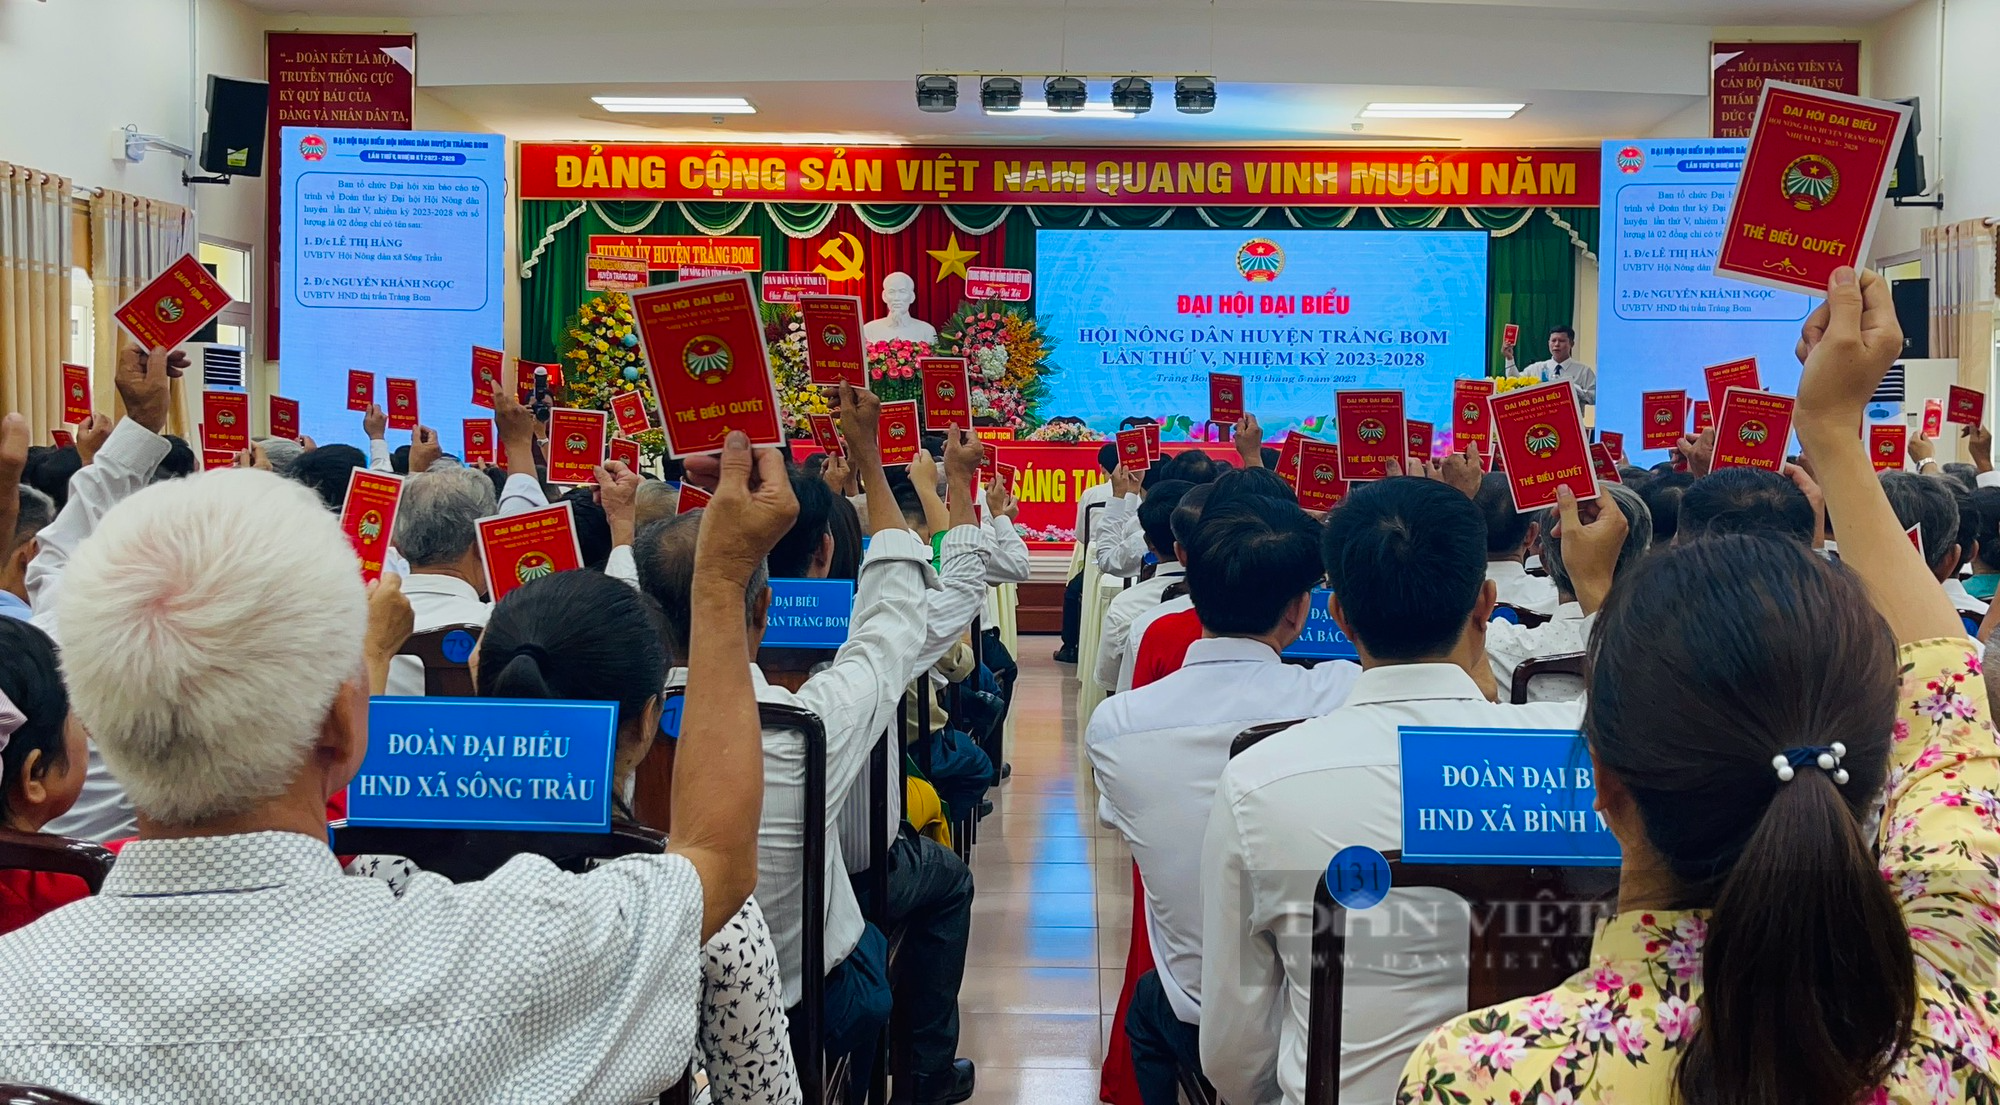 Phó Chủ tịch TƯ Hội NDVN Nguyễn Xuân Định dự Đại hội đại biểu Hội Nông dân huyện Trảng Bom, Đồng Nai - Ảnh 3.